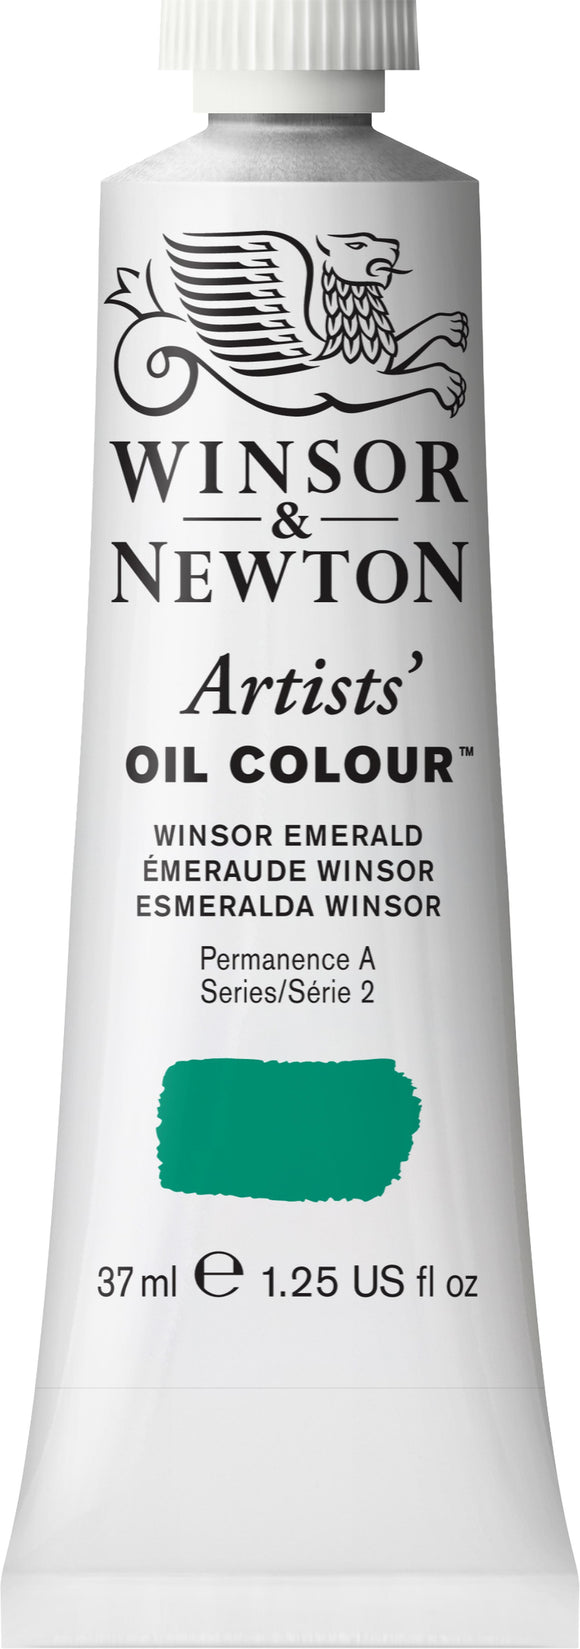 Winsor & Newton Artists Oil Color Winsor Emerald 37Ml